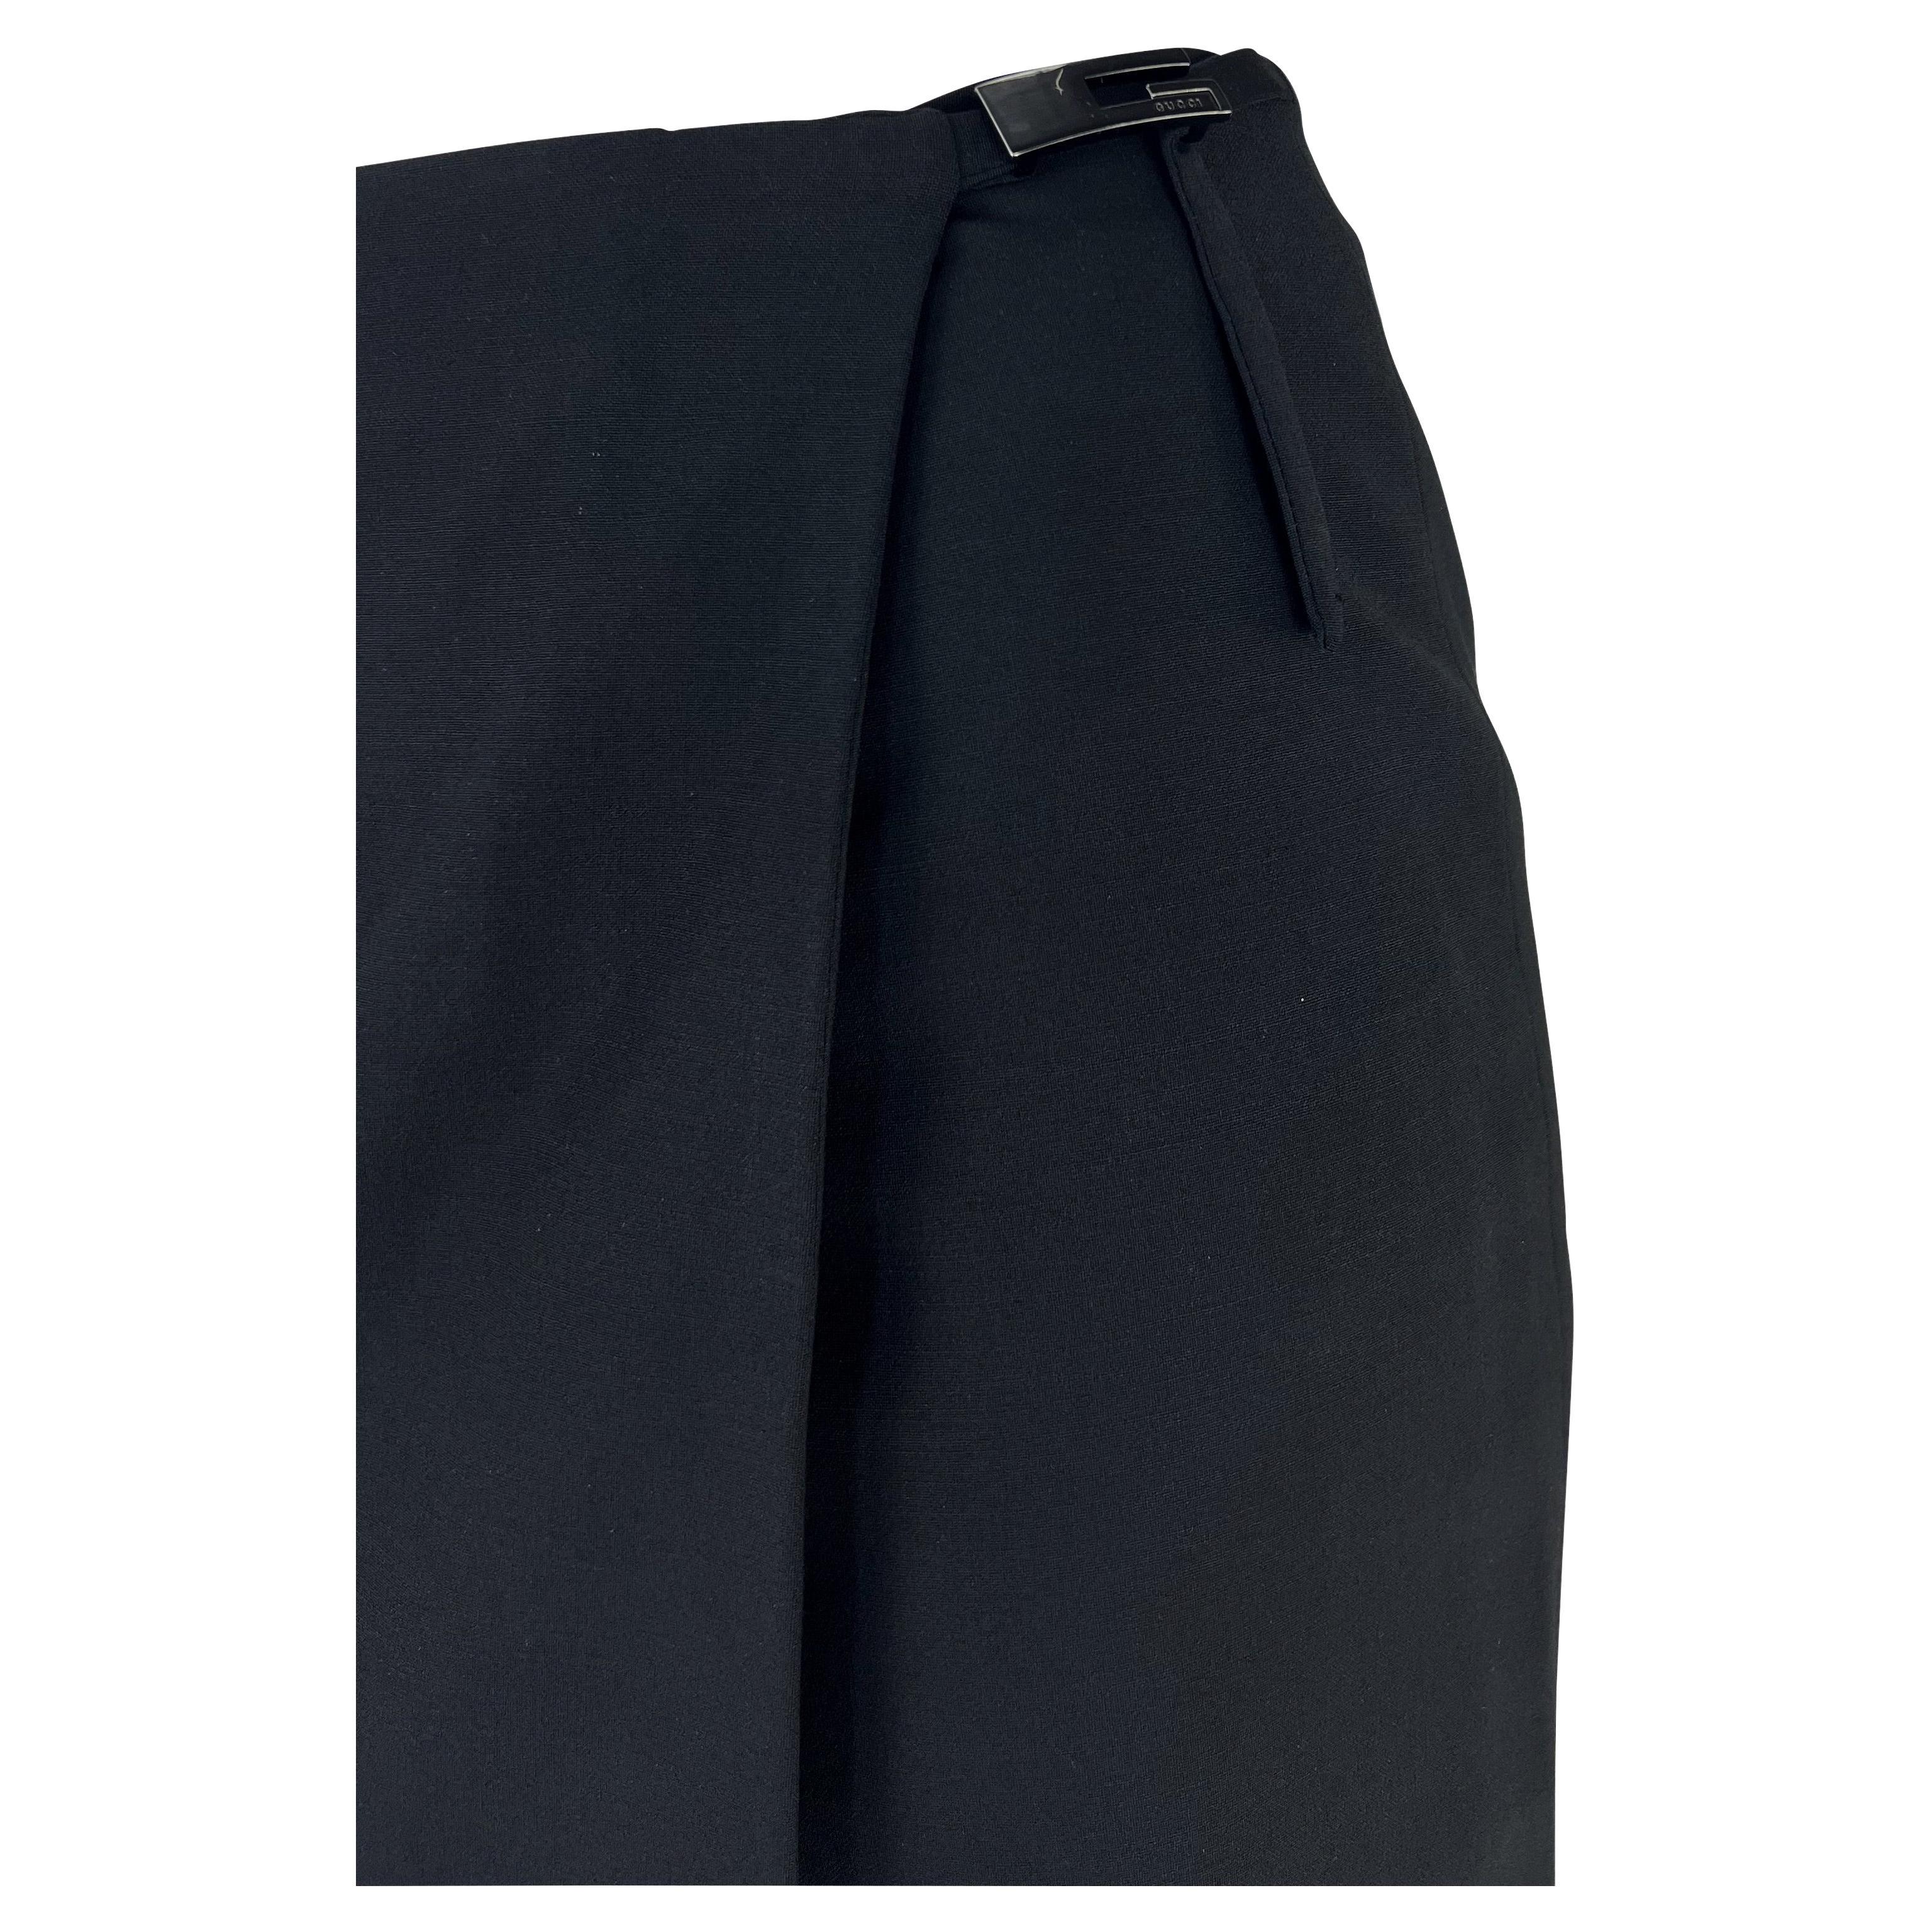 Présentation d'une fabuleuse jupe noire Gucci, dessinée par Tom Ford. Datant de 1998, cette jupe portefeuille est ornée de la célèbre boucle Gucci carrée 